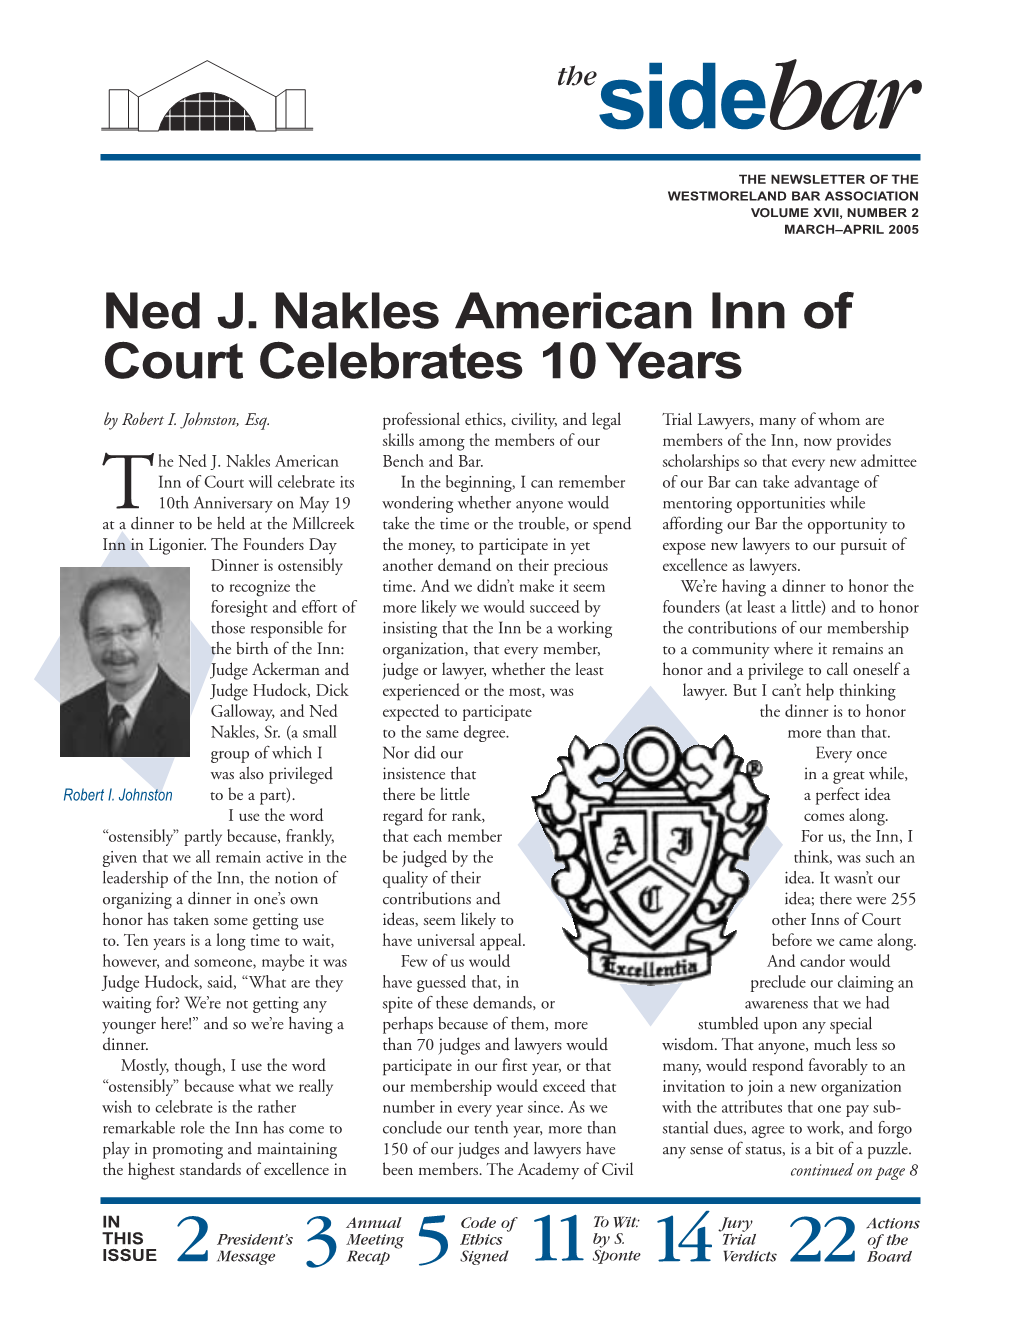 Ned J. Nakles American Inn of Court Celebrates 10 Years